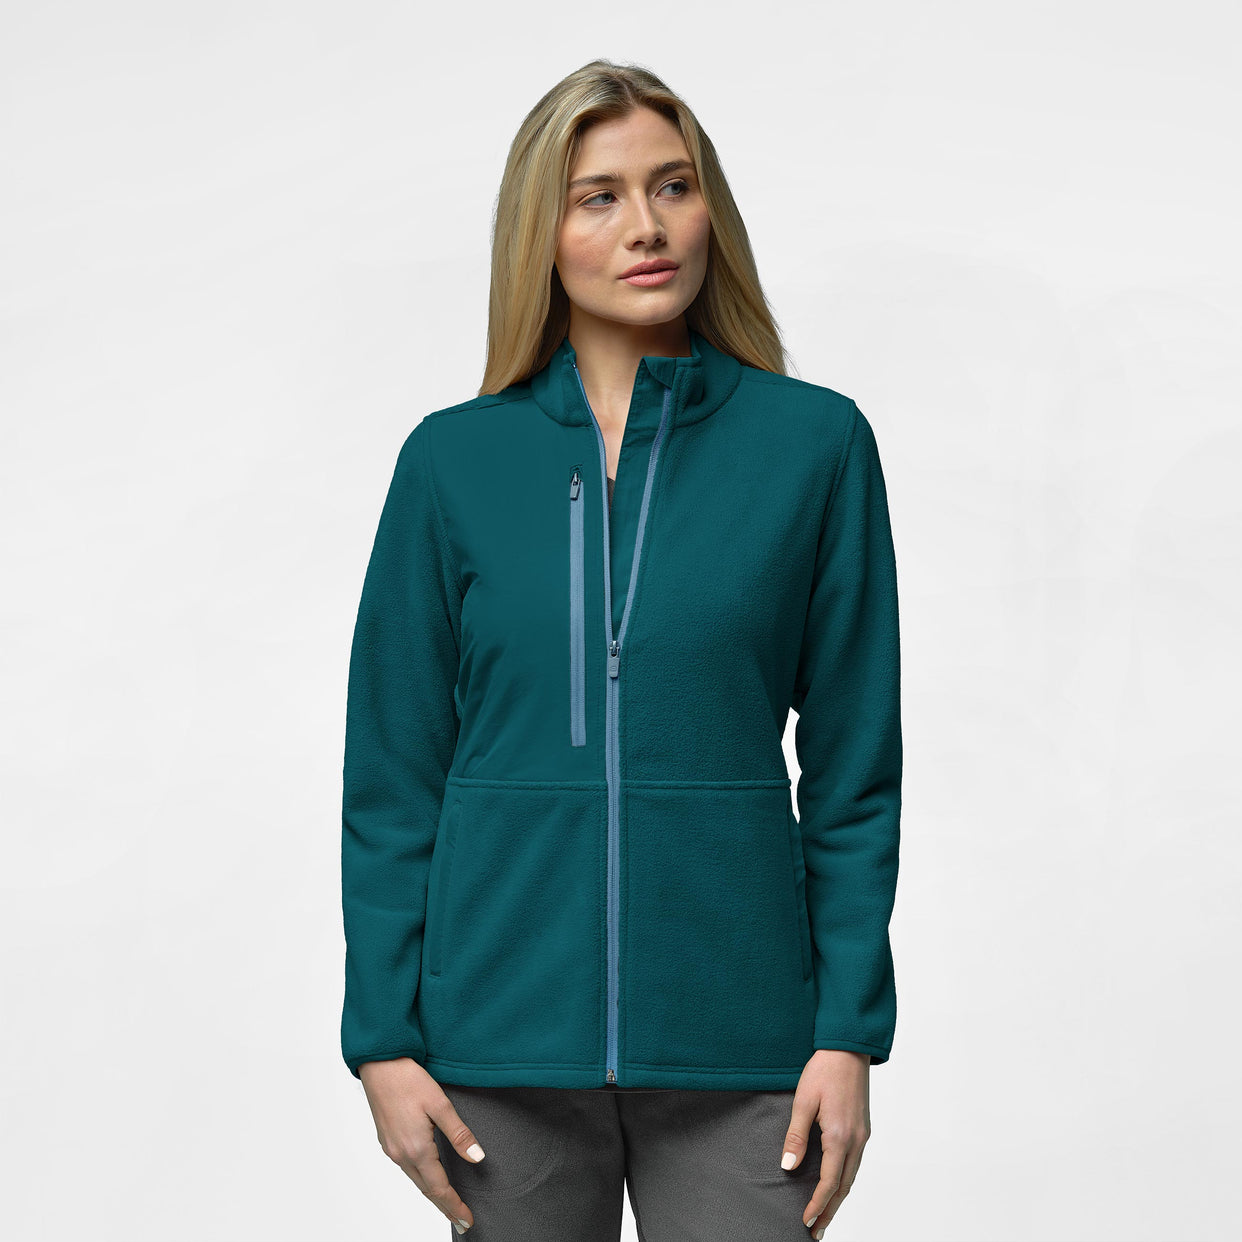 Slate Women's Micro Fleece Zip Jacket Caribbean Blue